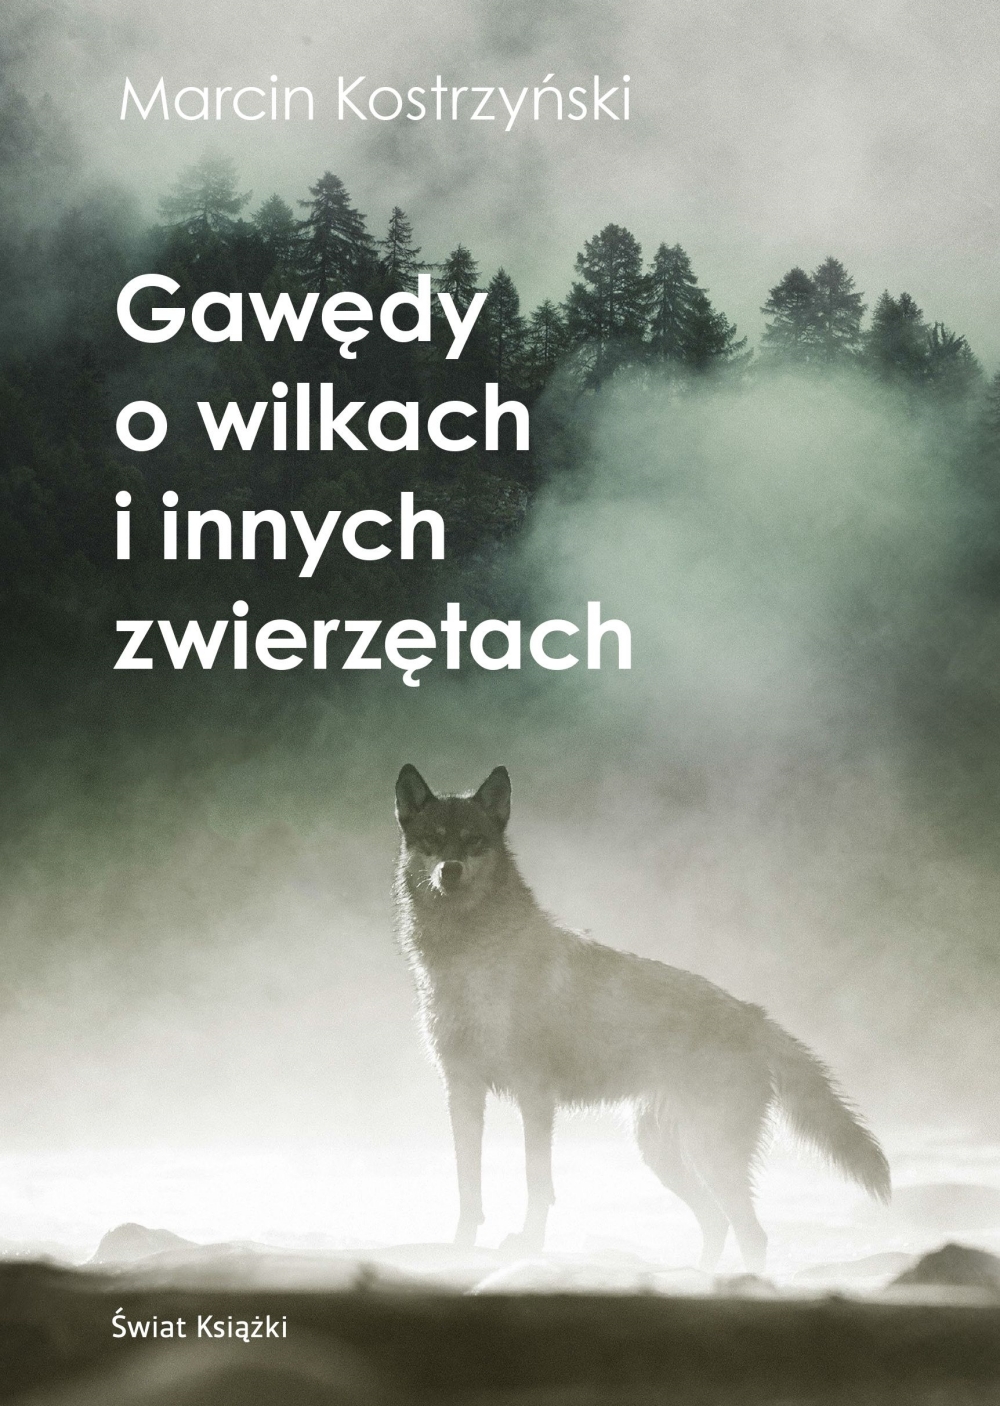 Okładka książki "Gawędy o wilkach i innych zwierzętach"